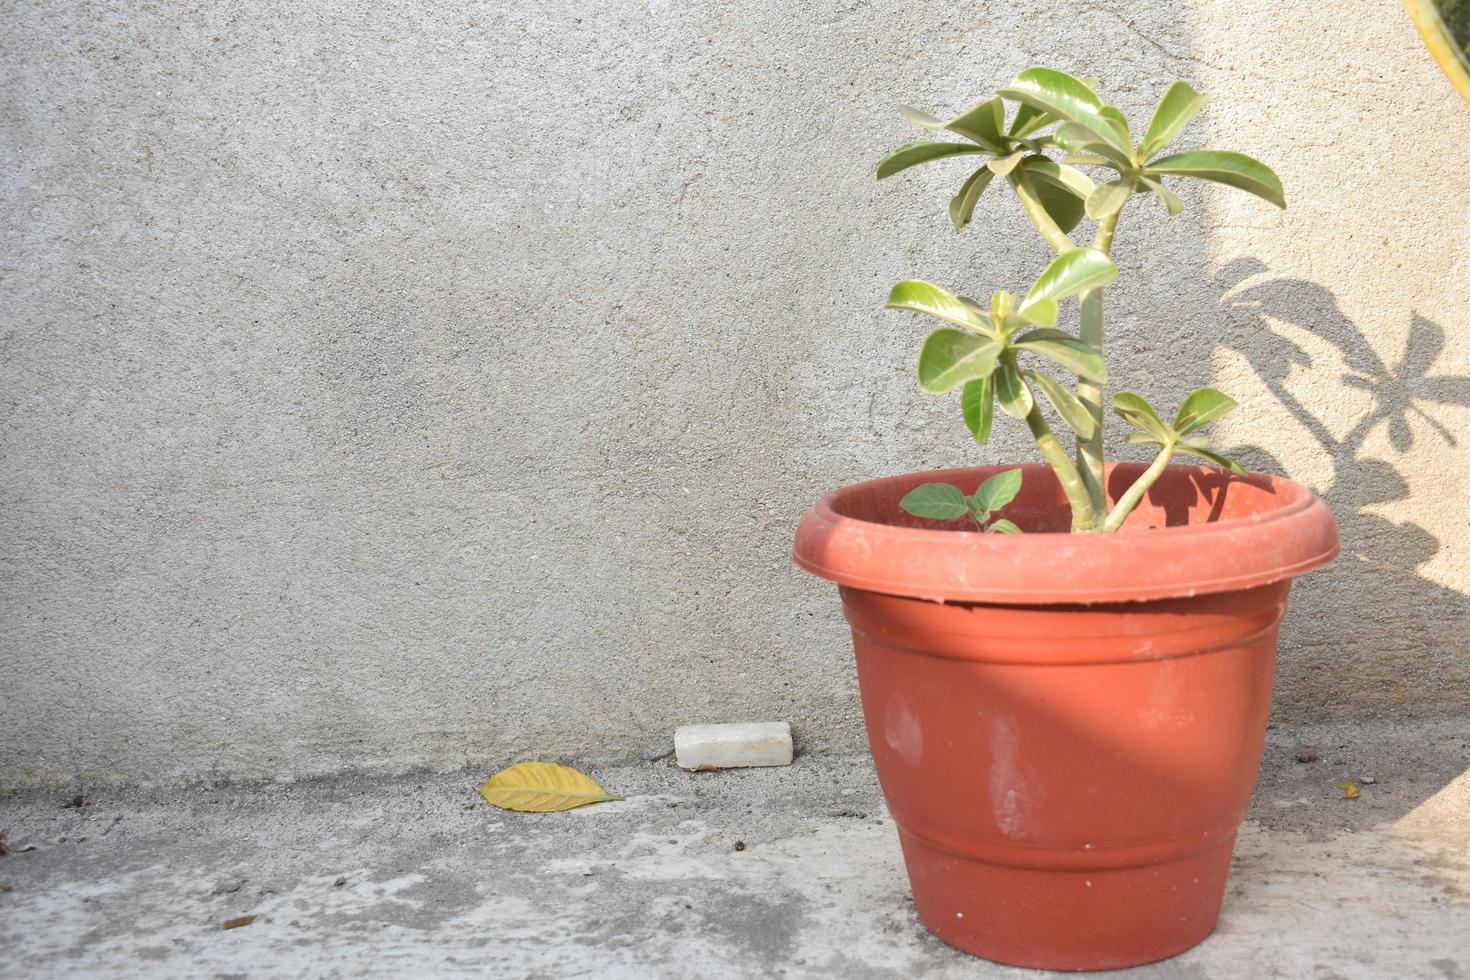 Adenium plant in a pot photo